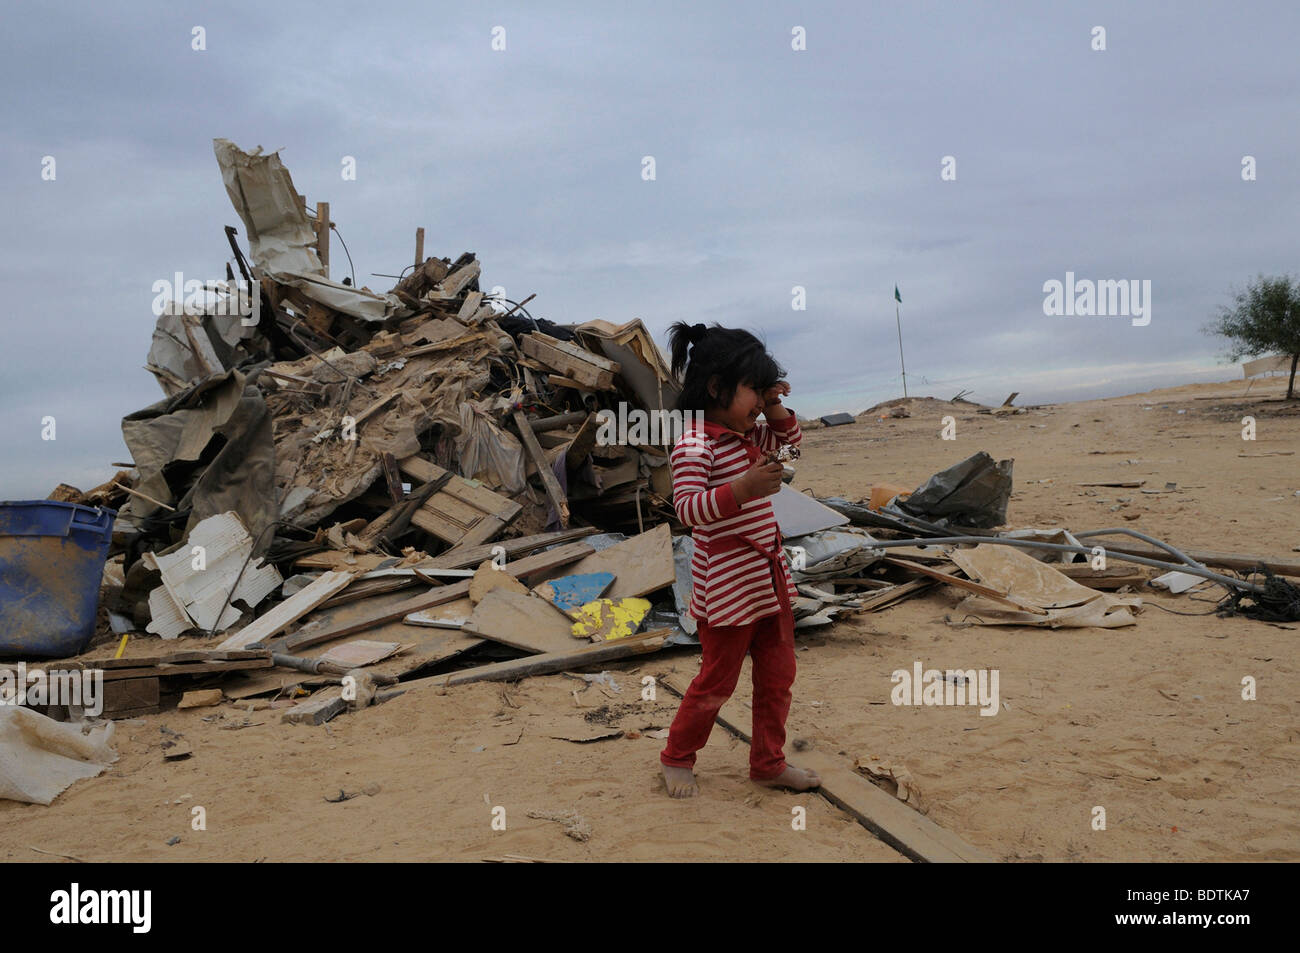 Au milieu des cris de fille bédouine ruine de démoli la maison rasée par les autorités israéliennes à Abdallah Al Atrash village bédouin non reconnu dans le désert du Néguev, Israël Banque D'Images